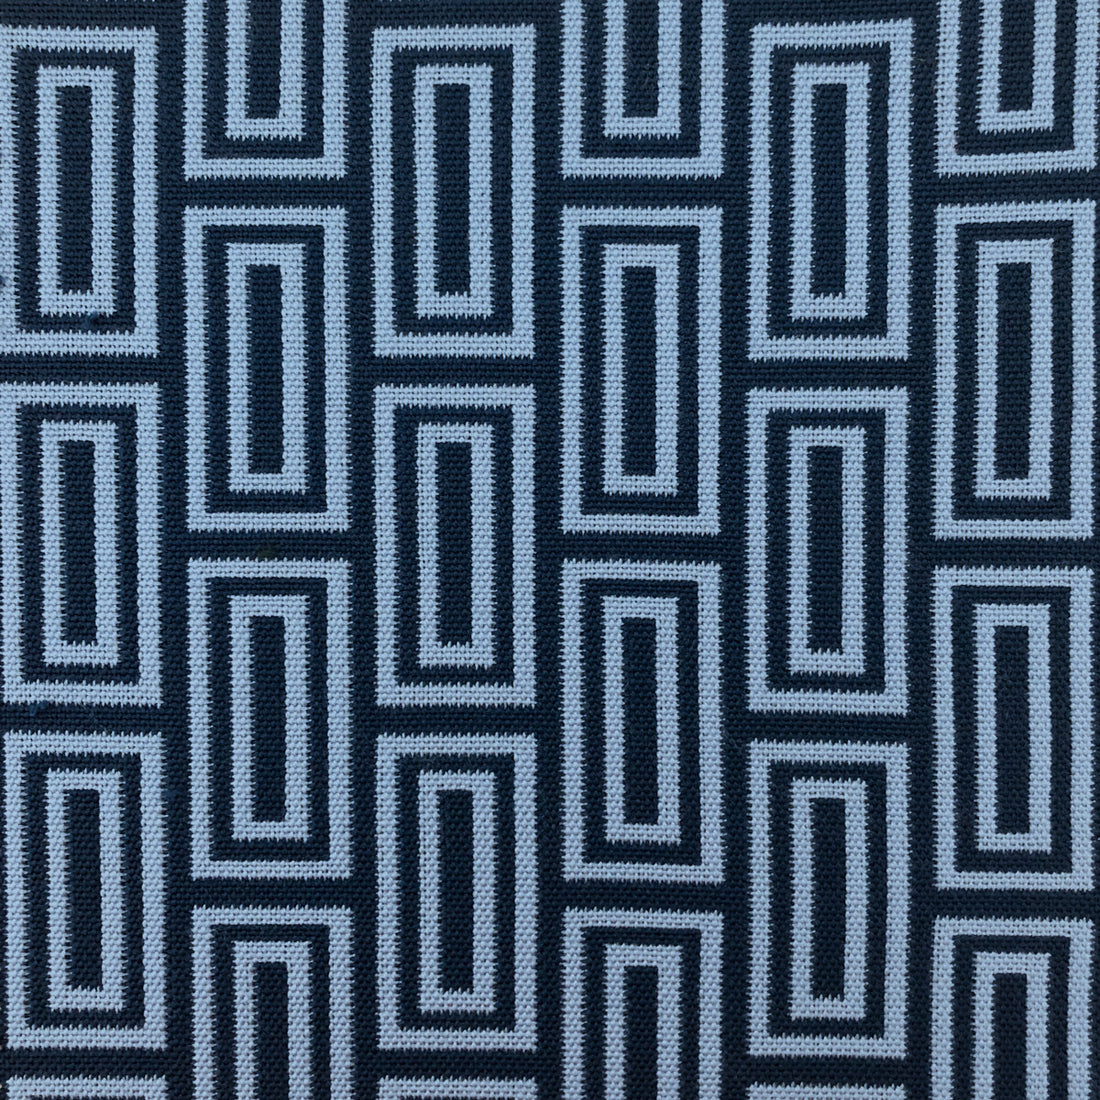 Caleb fabric in azul color - pattern LCT1056.006.0 - by Gaston y Daniela in the Lorenzo Castillo VI collection